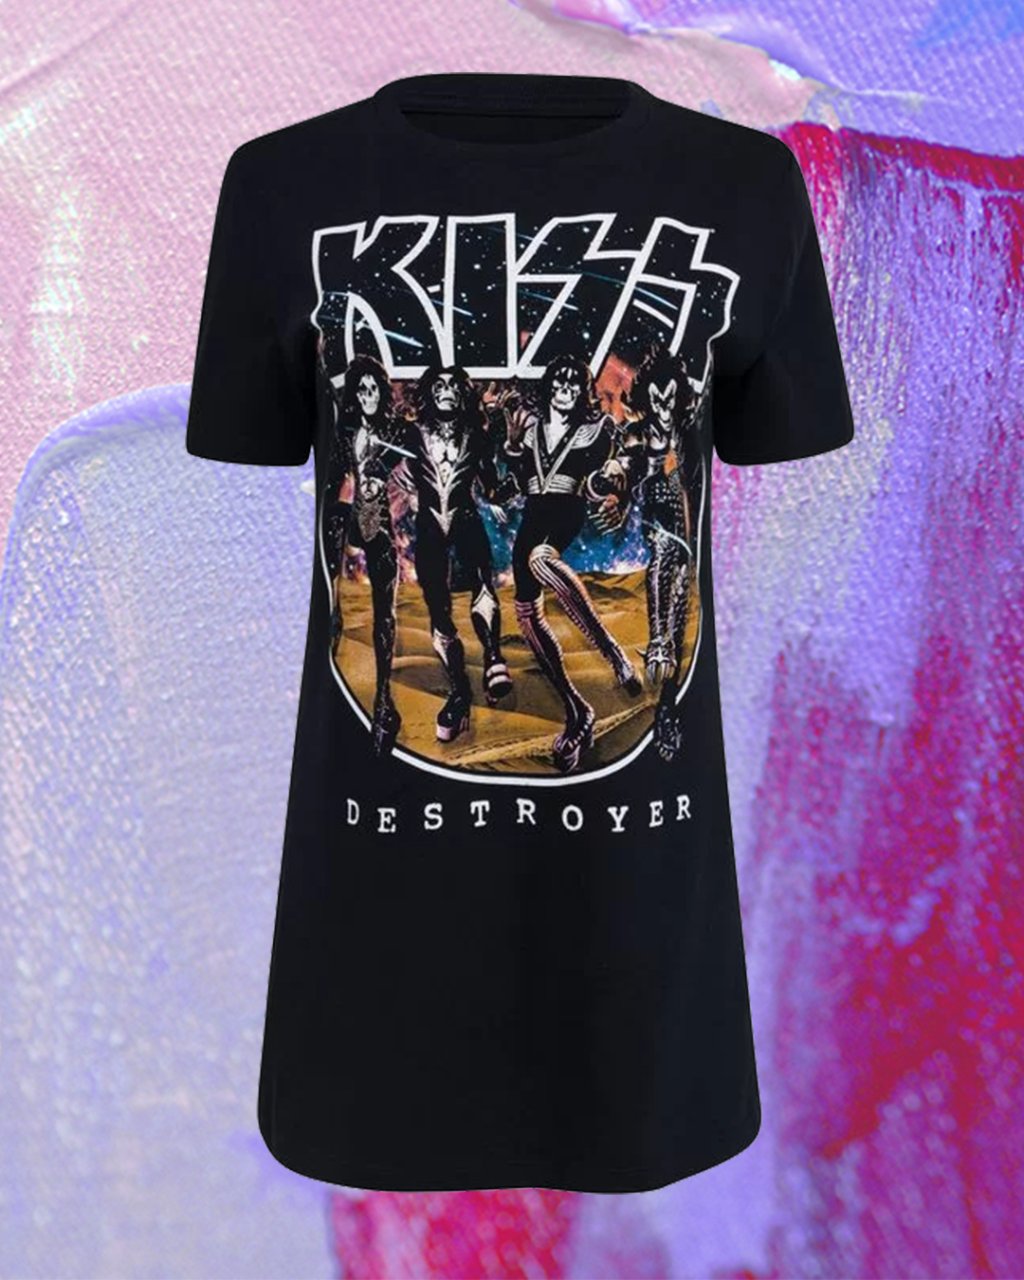 Camiseta preta do Kiss. Montagem em fundo lilás, rosa e roxo